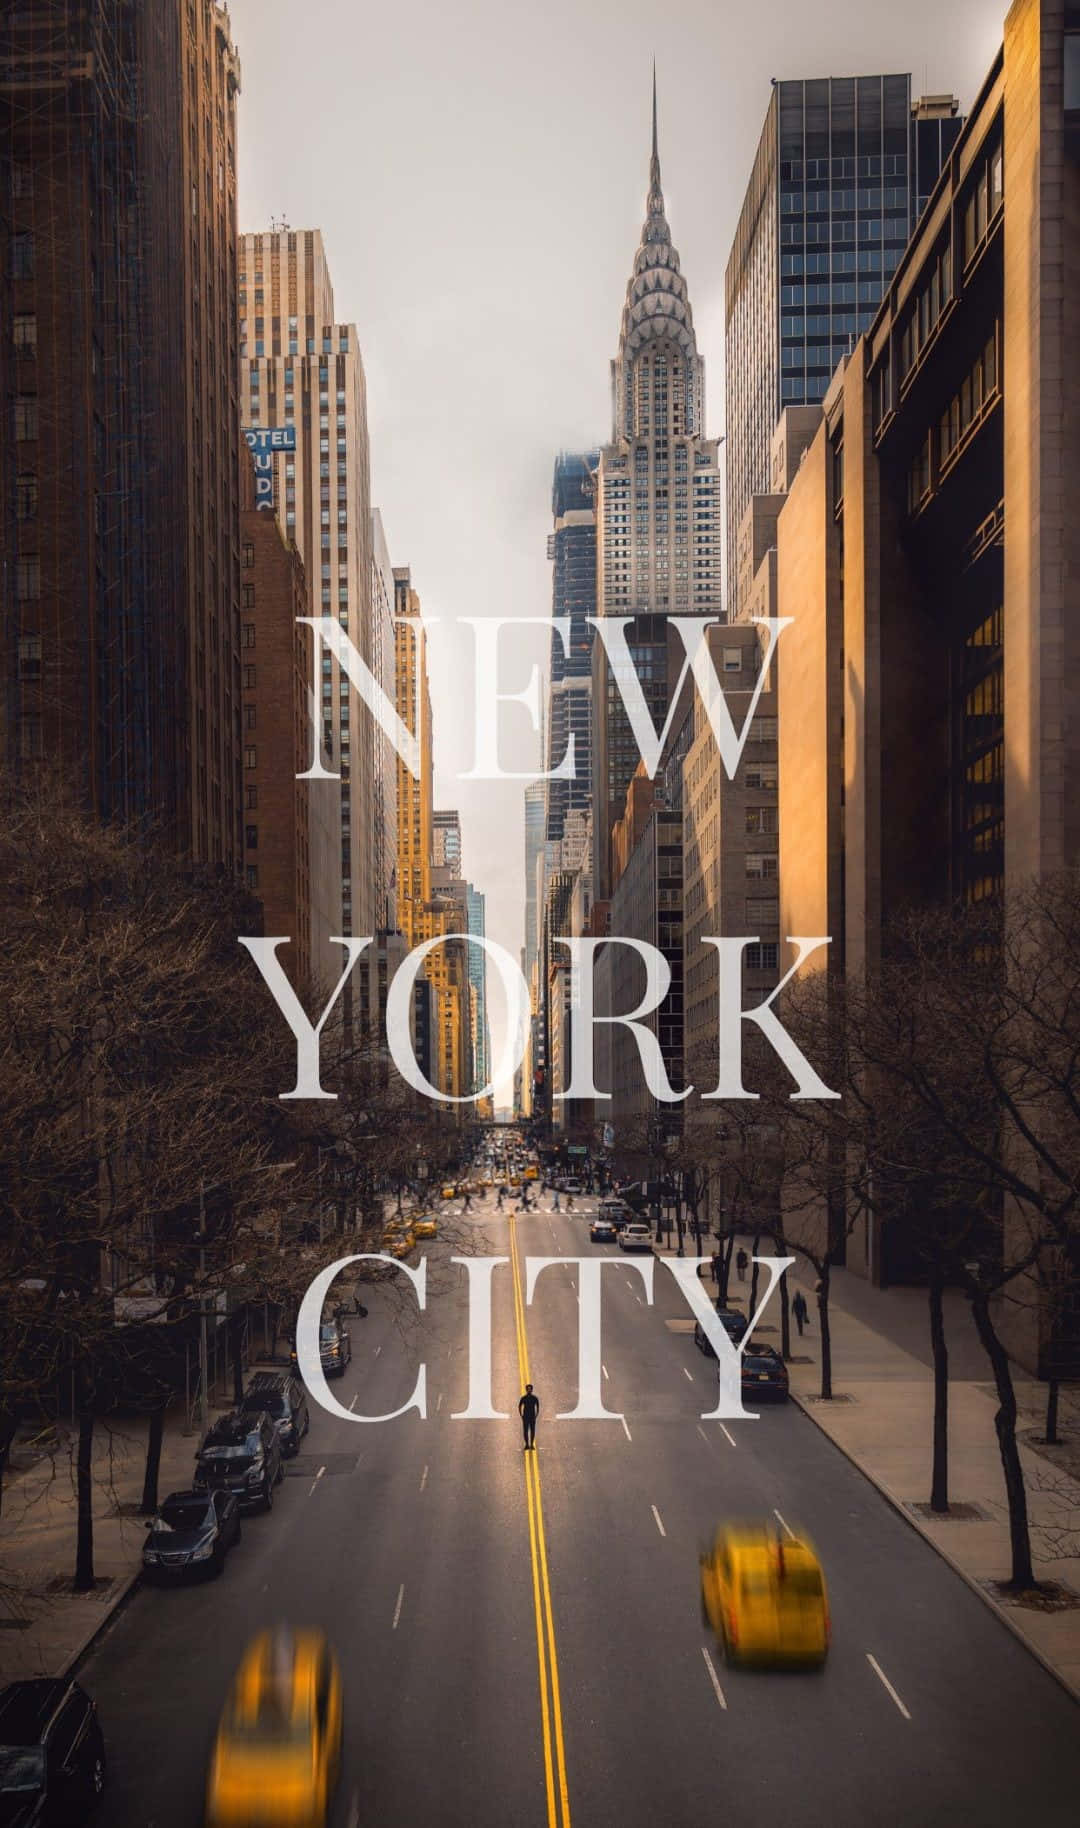 Genießensie Einen Atemberaubenden Blick Auf Die Skyline Von New York City Von Ihrem Iphone Xs.